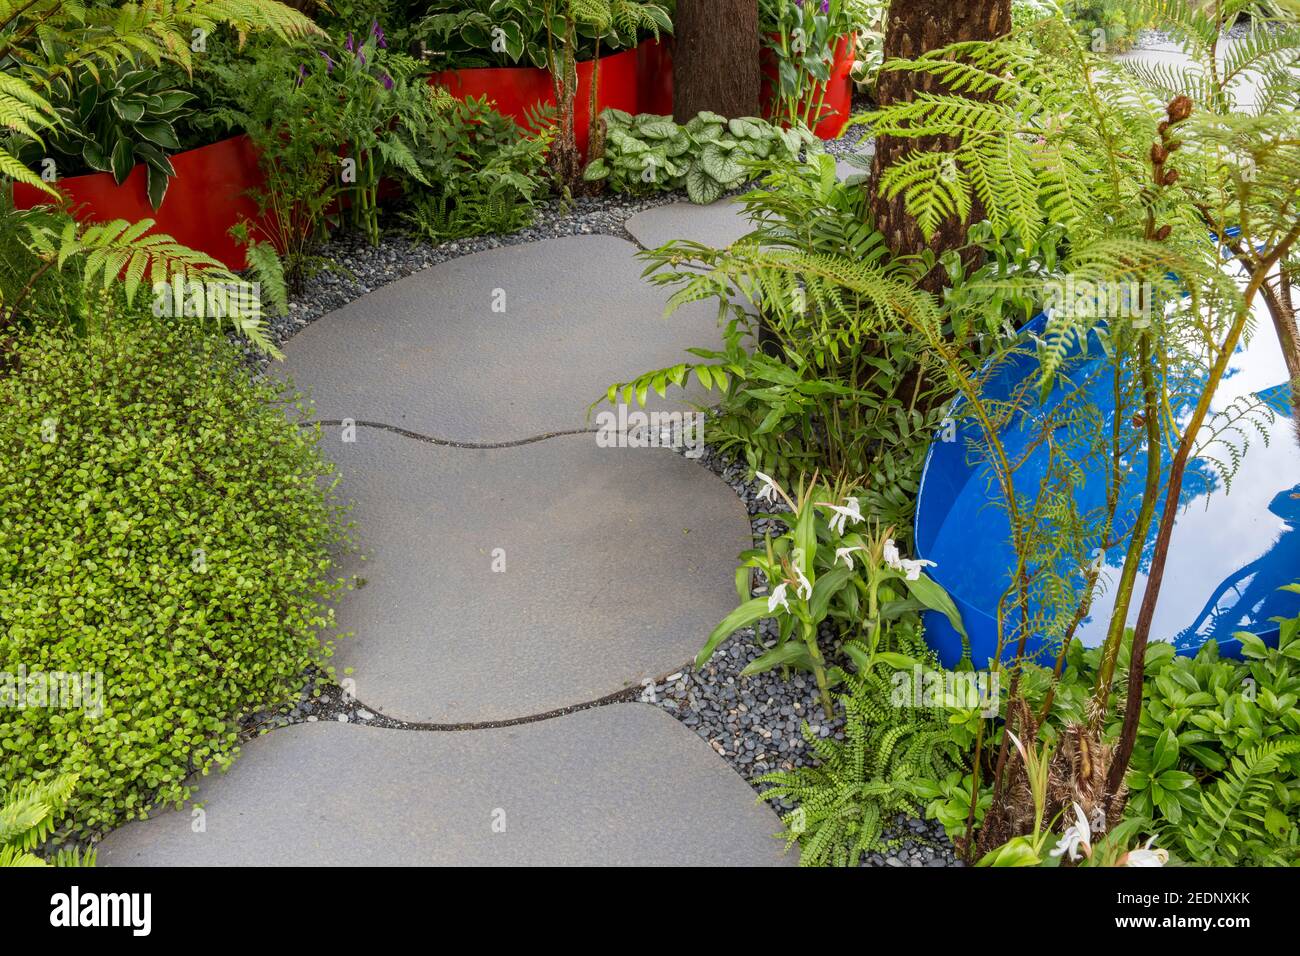 Un chemin de jardin pavé de pierre moderne avec un élément d'eau avec une bordure de jardin vert persistant fougères Hampton court Flower Show Londres Angleterre Royaume-Uni Banque D'Images